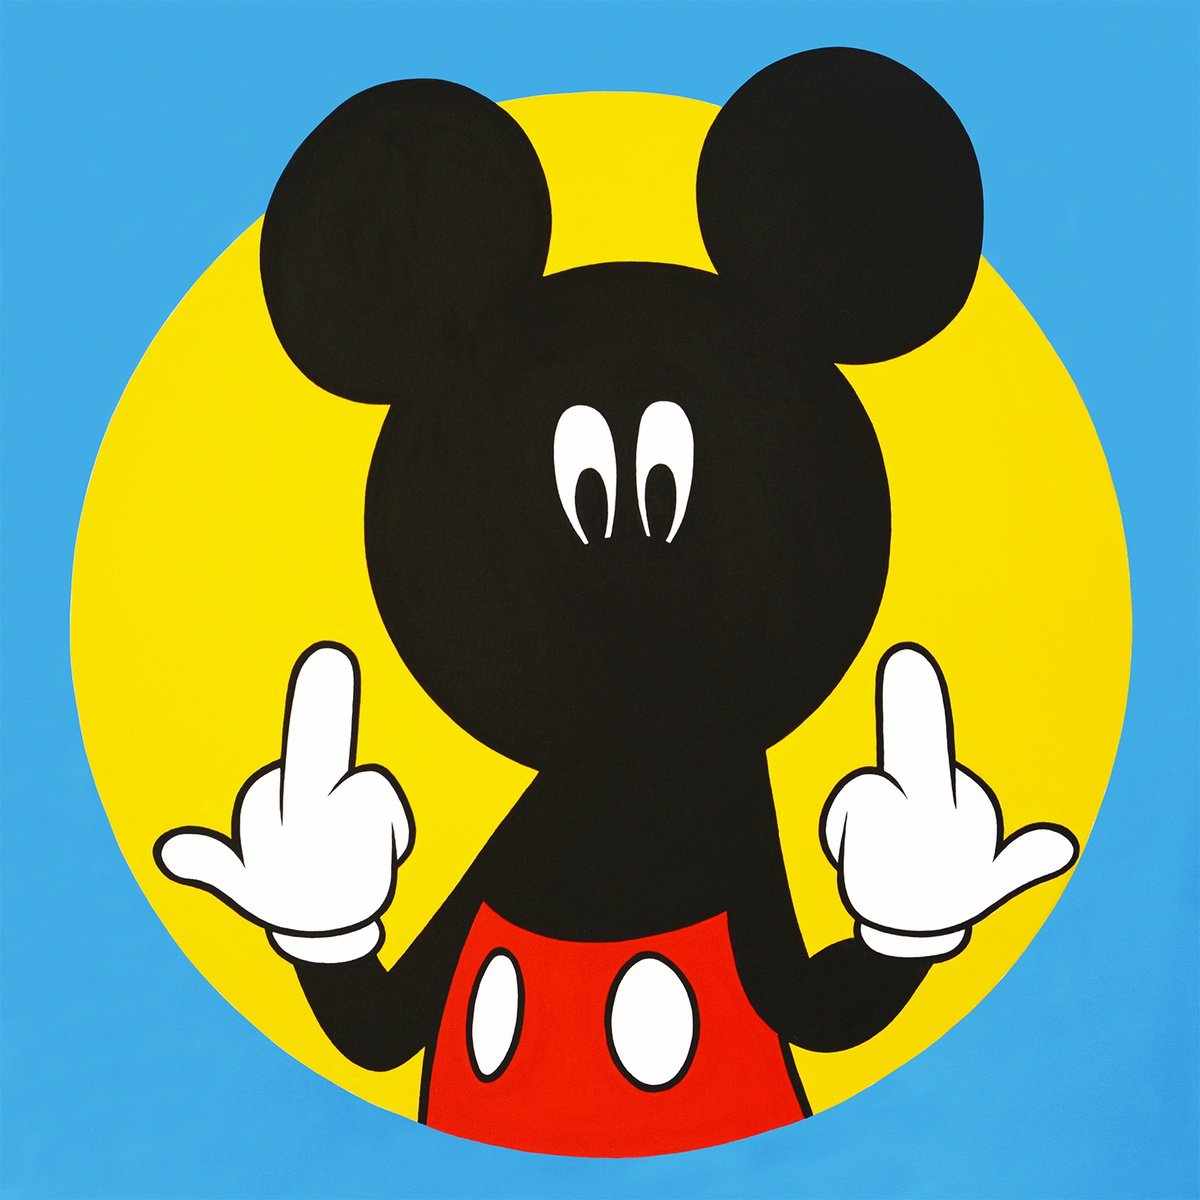 Ickey Mickey by Pop Art Australia